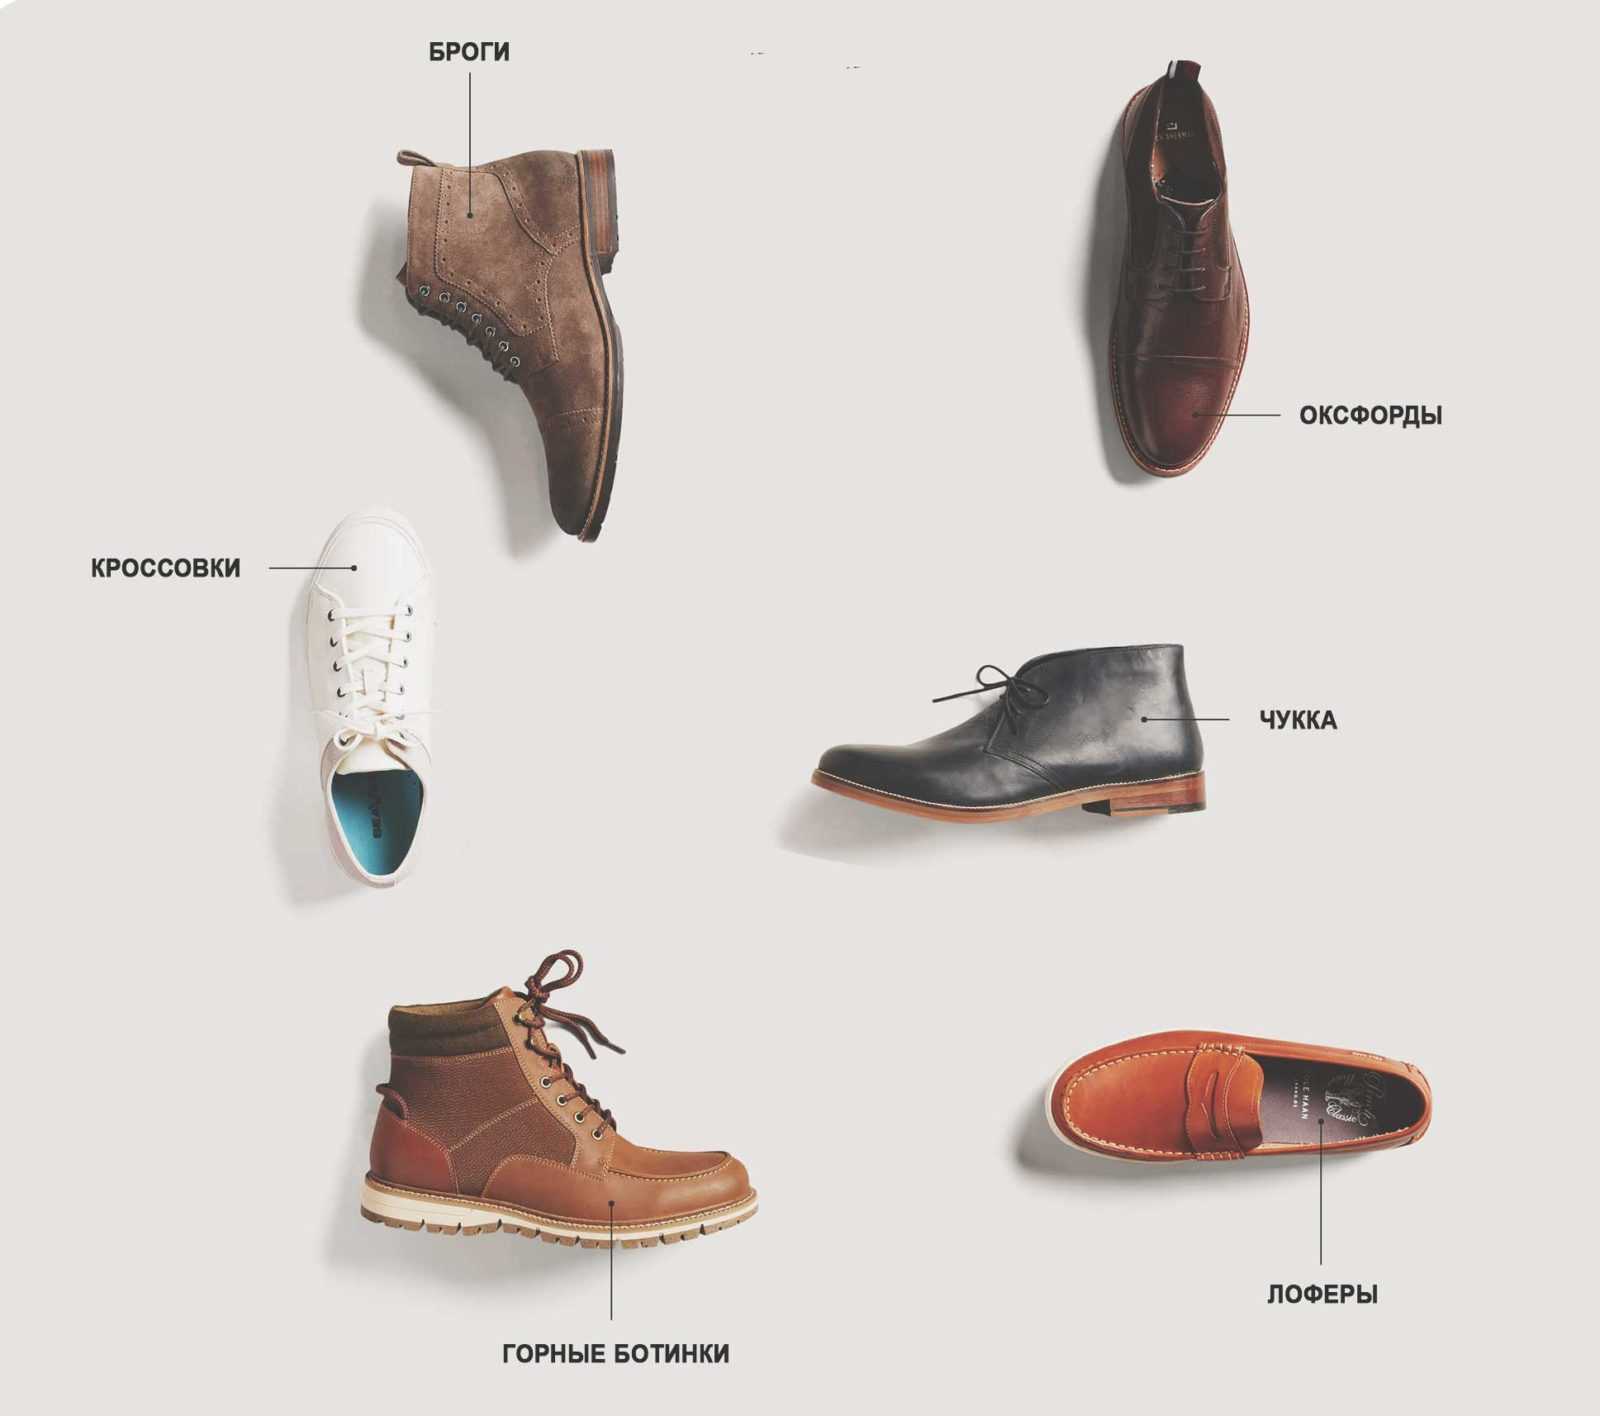 Мужская обувь список. Формы мужской обуви. Название мужских ботинок. Мужская обувь названия моделей. Классификация мужской обуви.